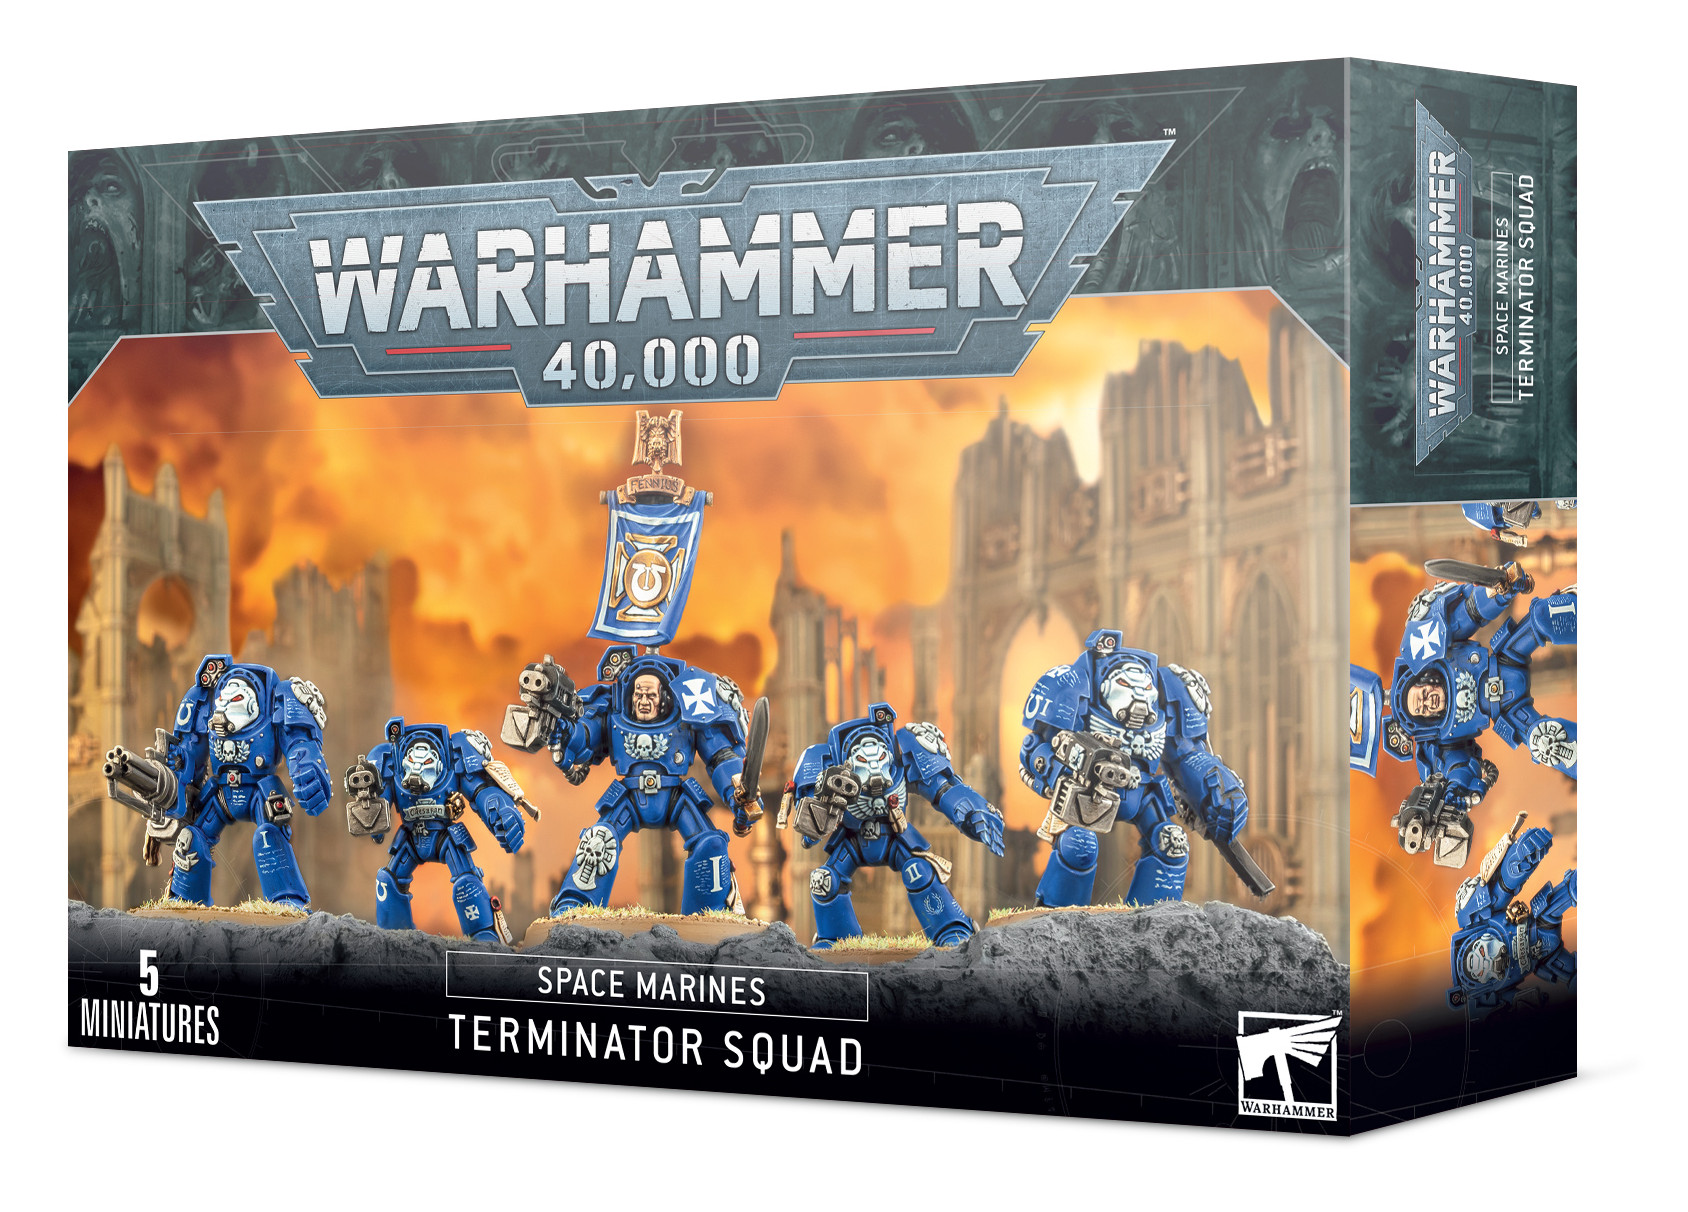 Terminator squad. Terminator Squad Warhammer. Space Marine Terminator миниатюры. Space Marines Primaris Reivers. Terminator Assault Squad.